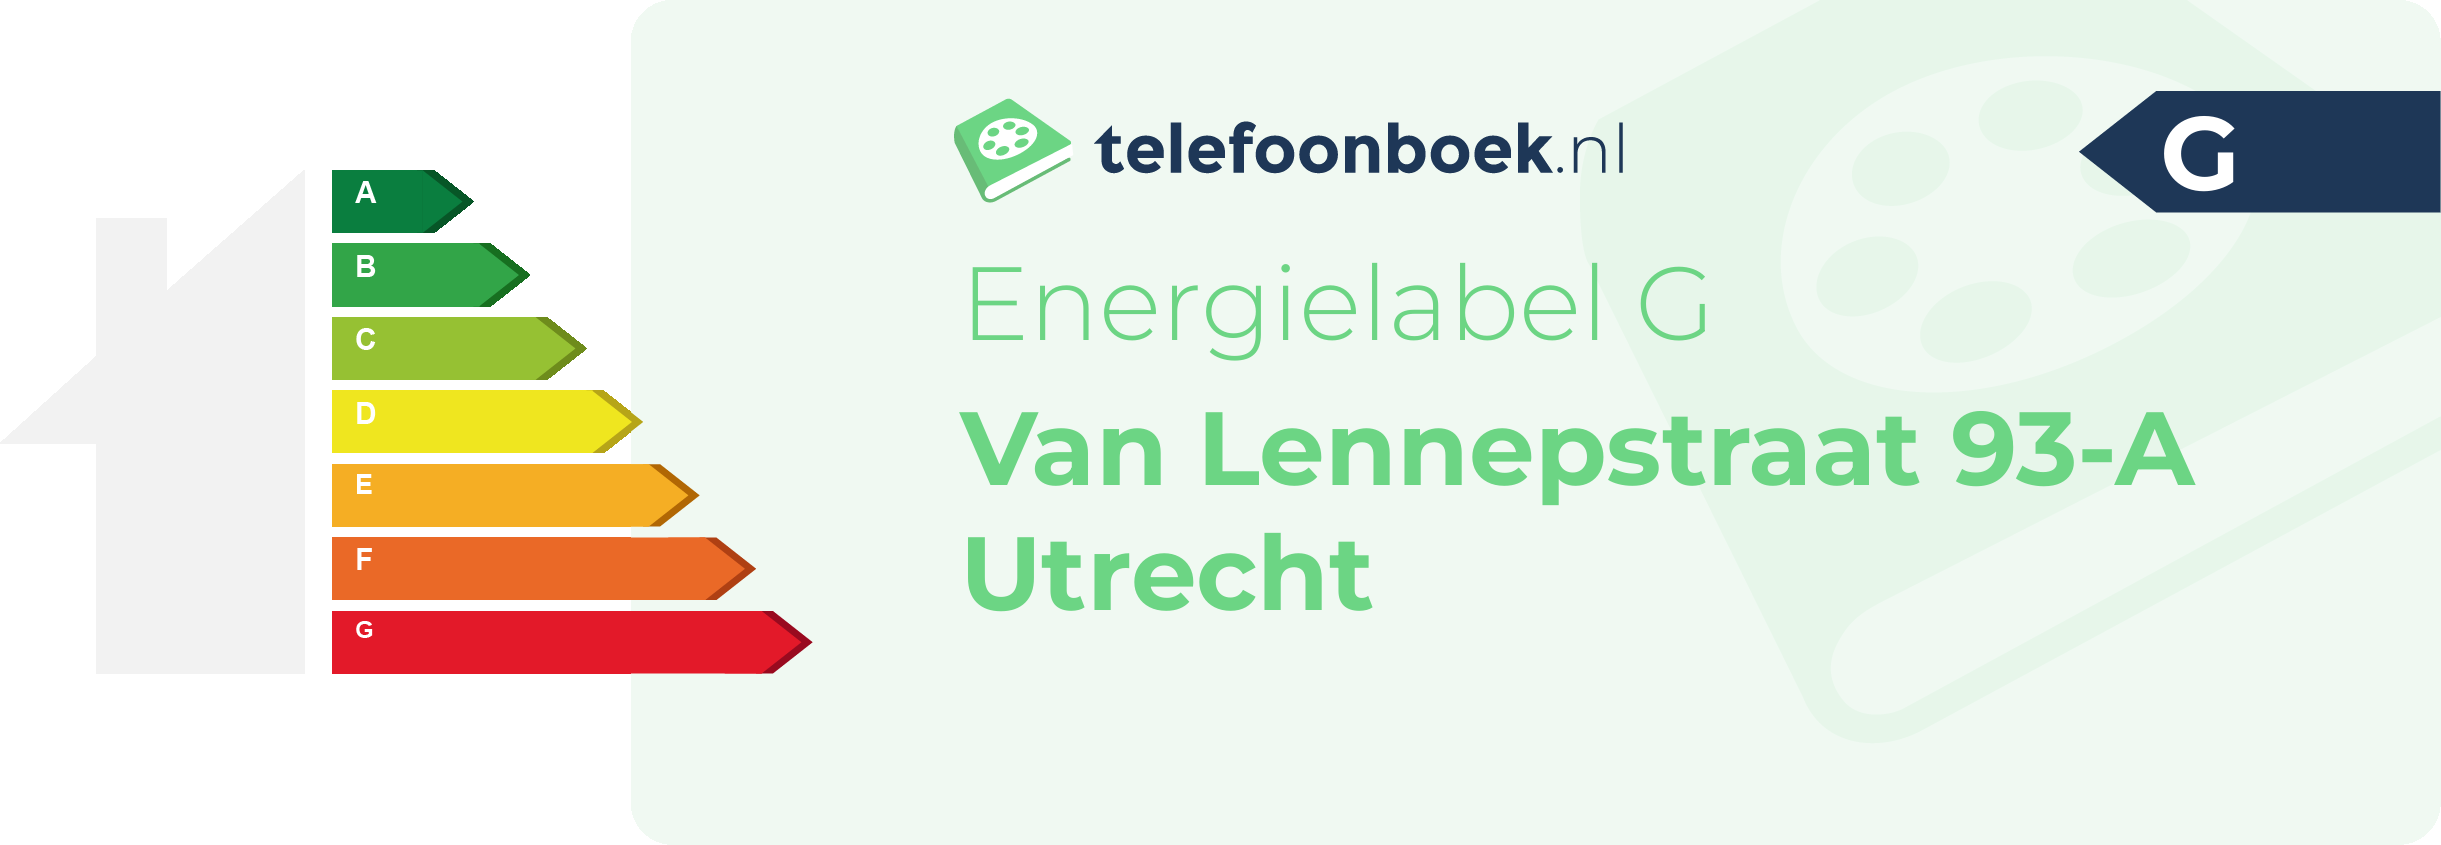 Energielabel Van Lennepstraat 93-A Utrecht